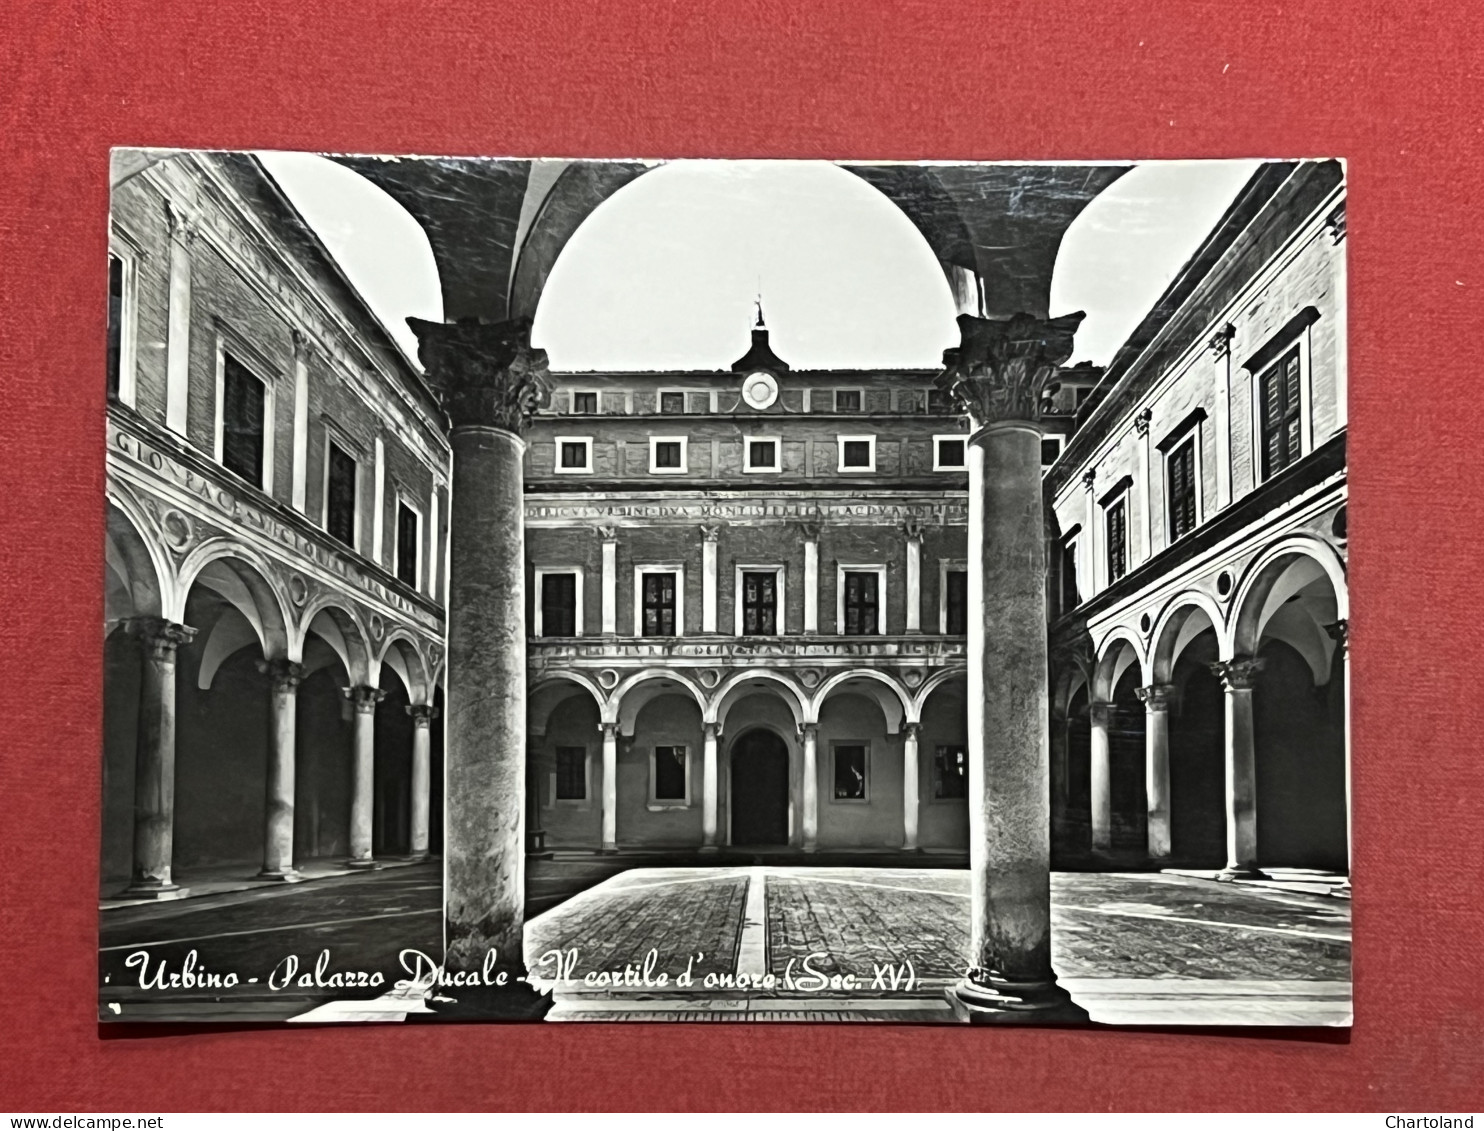 Cartolina - Urbino - Palazzo Ducale - Il Cortile D'Onore - 1964 - Urbino